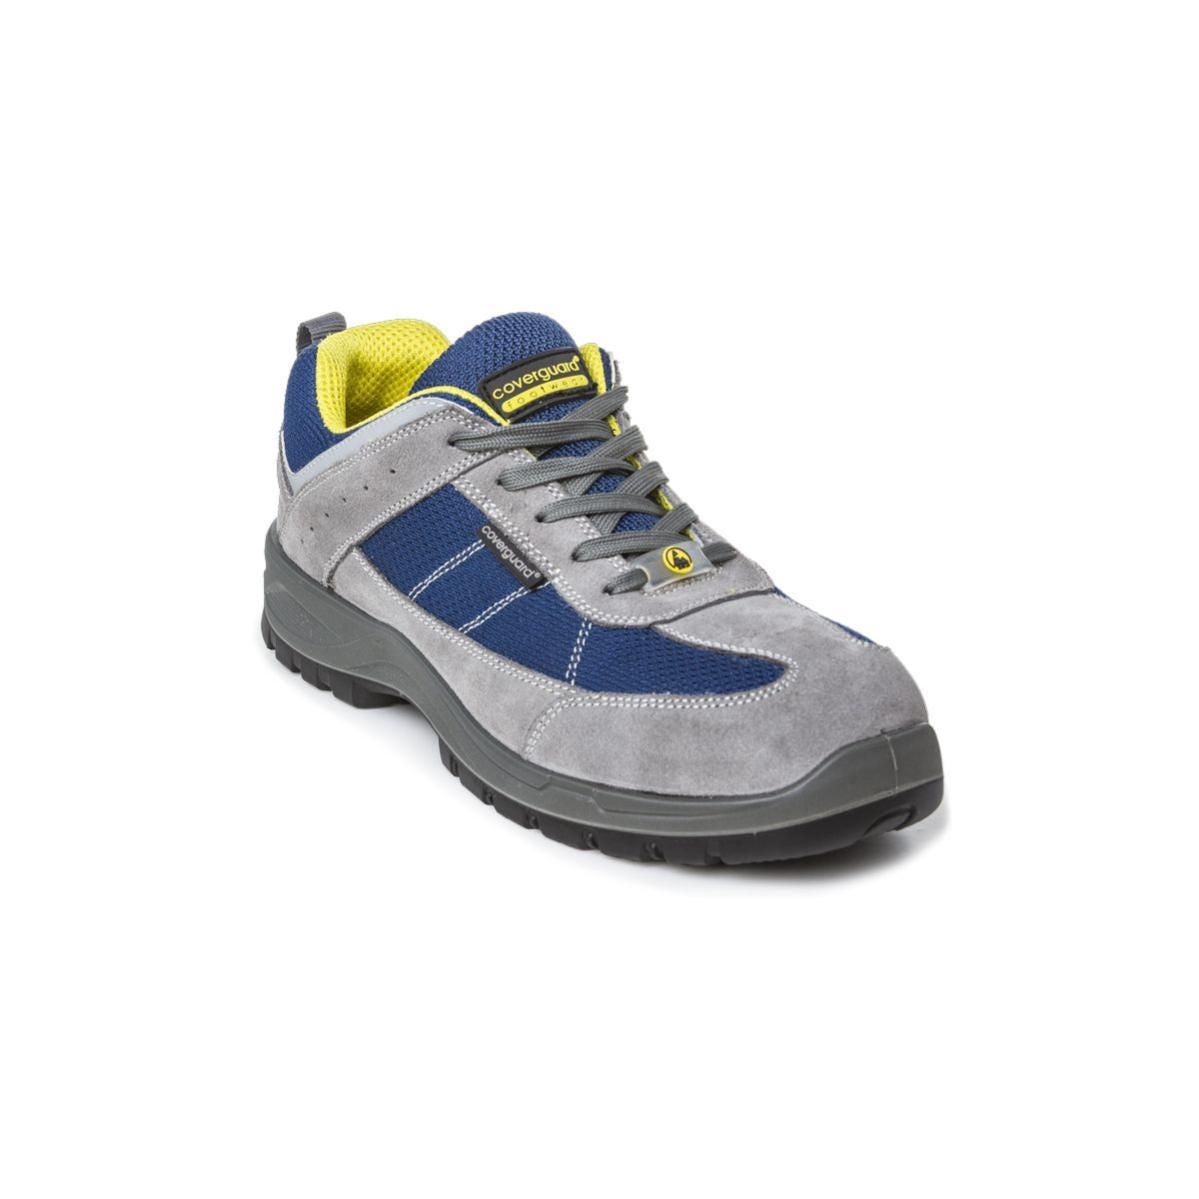 Chaussures de sécurité LEAD S1P SRC basses bleu gris - COVERGUARD - Taille 41 0